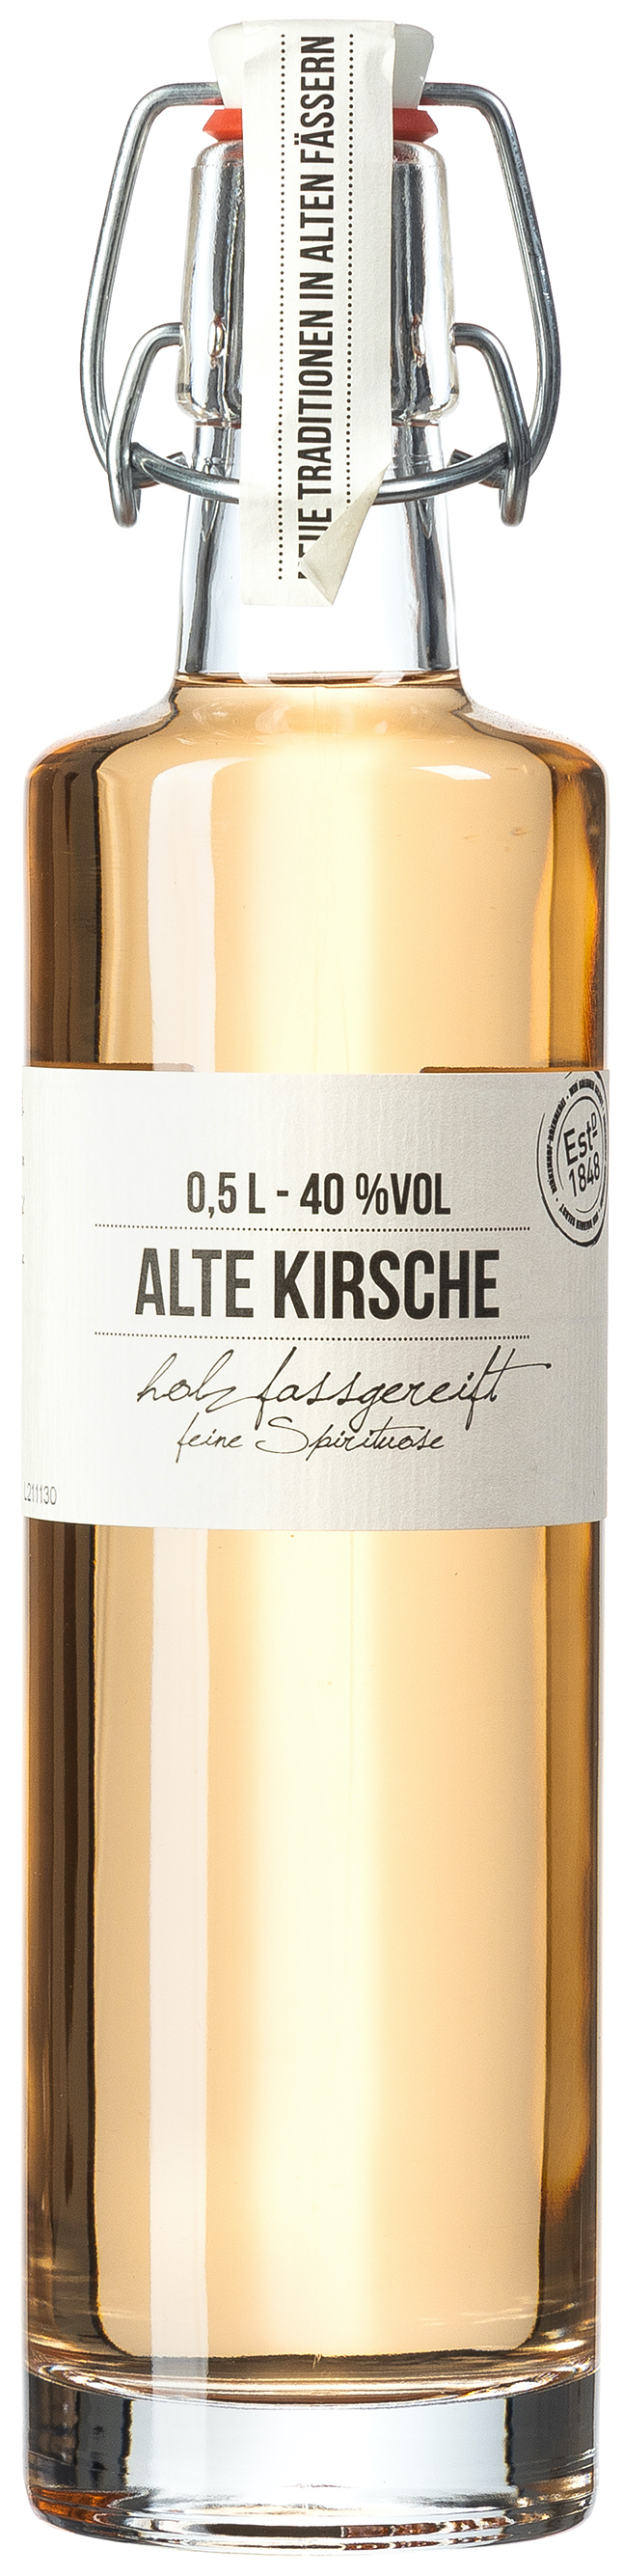 Birkenhof Alte Kirsche 40% vol. 0,5L